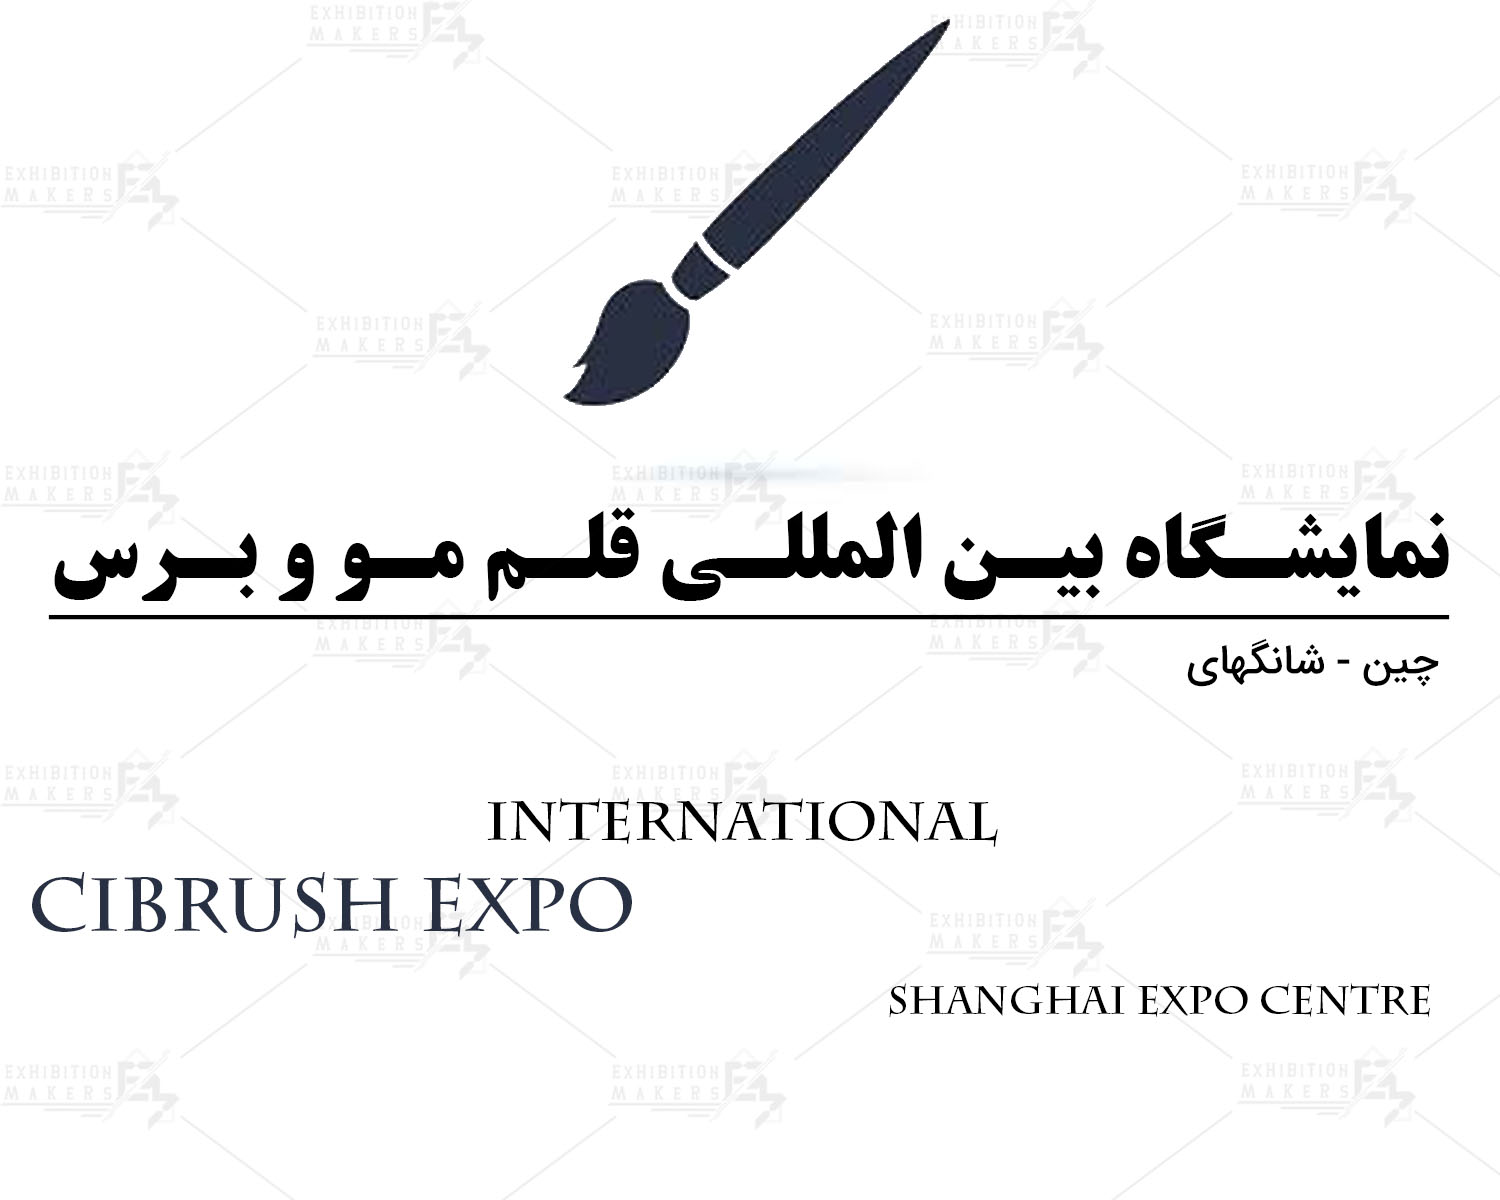 نمایشگاه بین المللی قلم مو و برس شانگهای چین